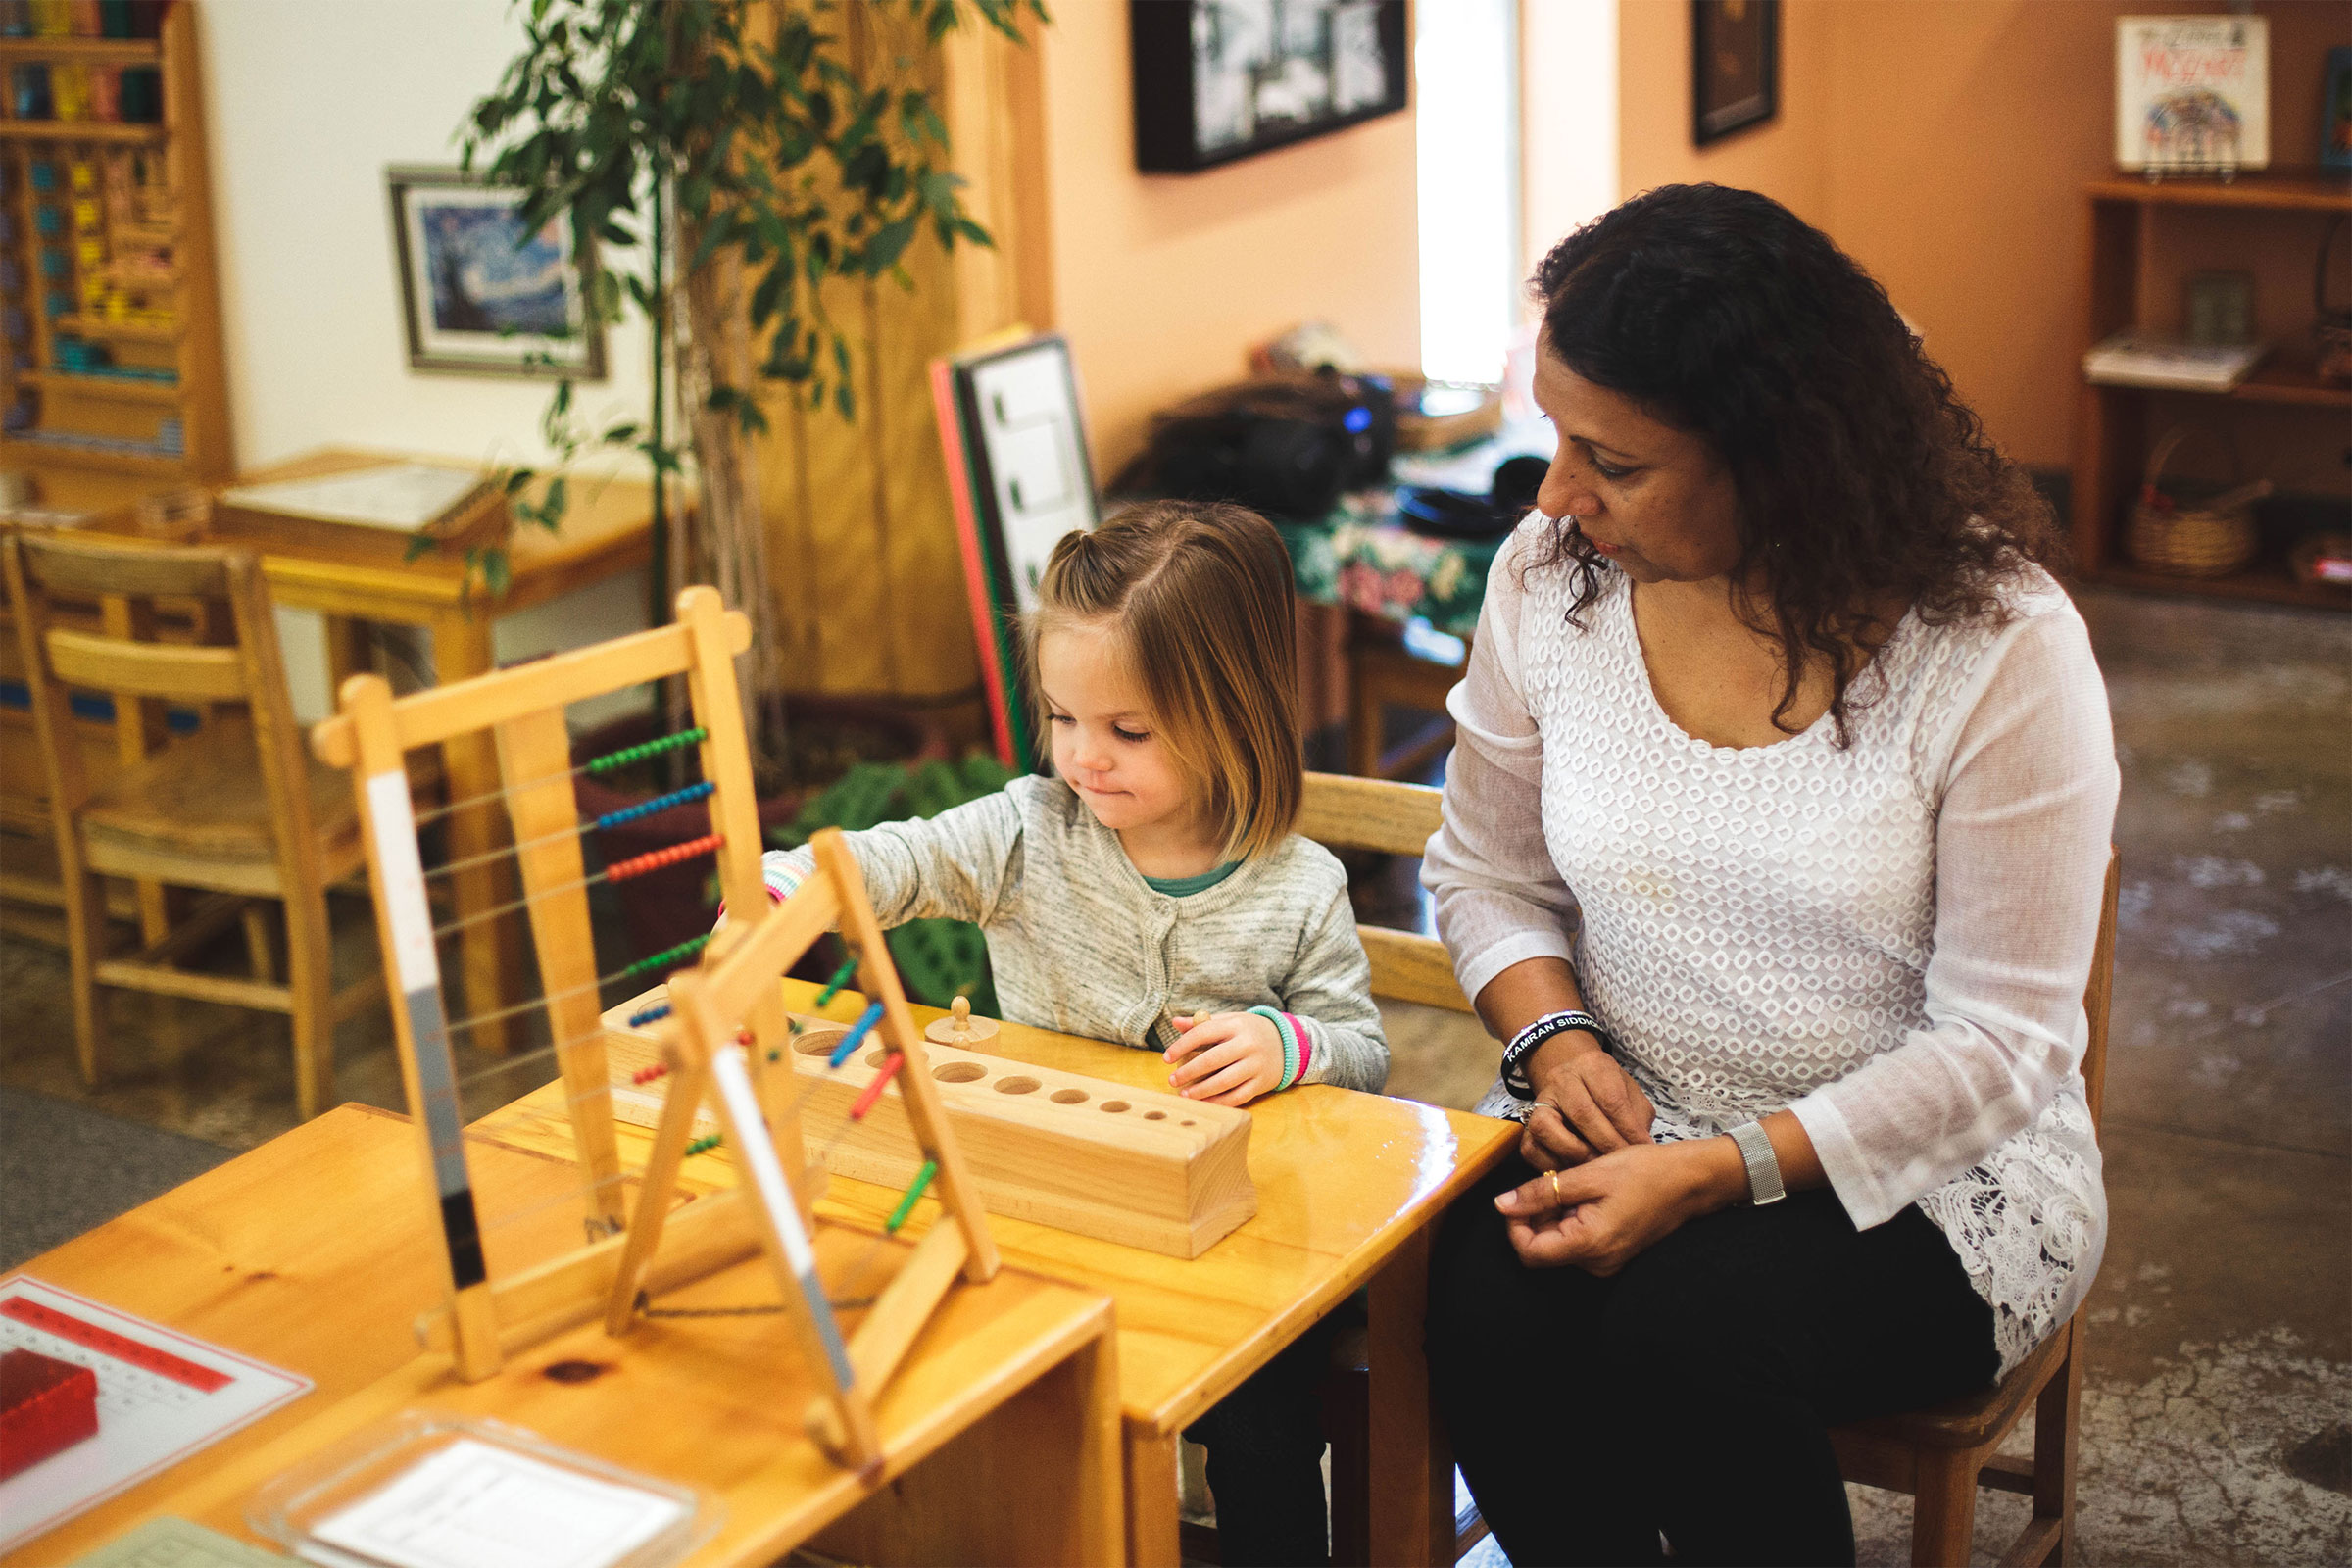 Directress watches child using Montessori materials